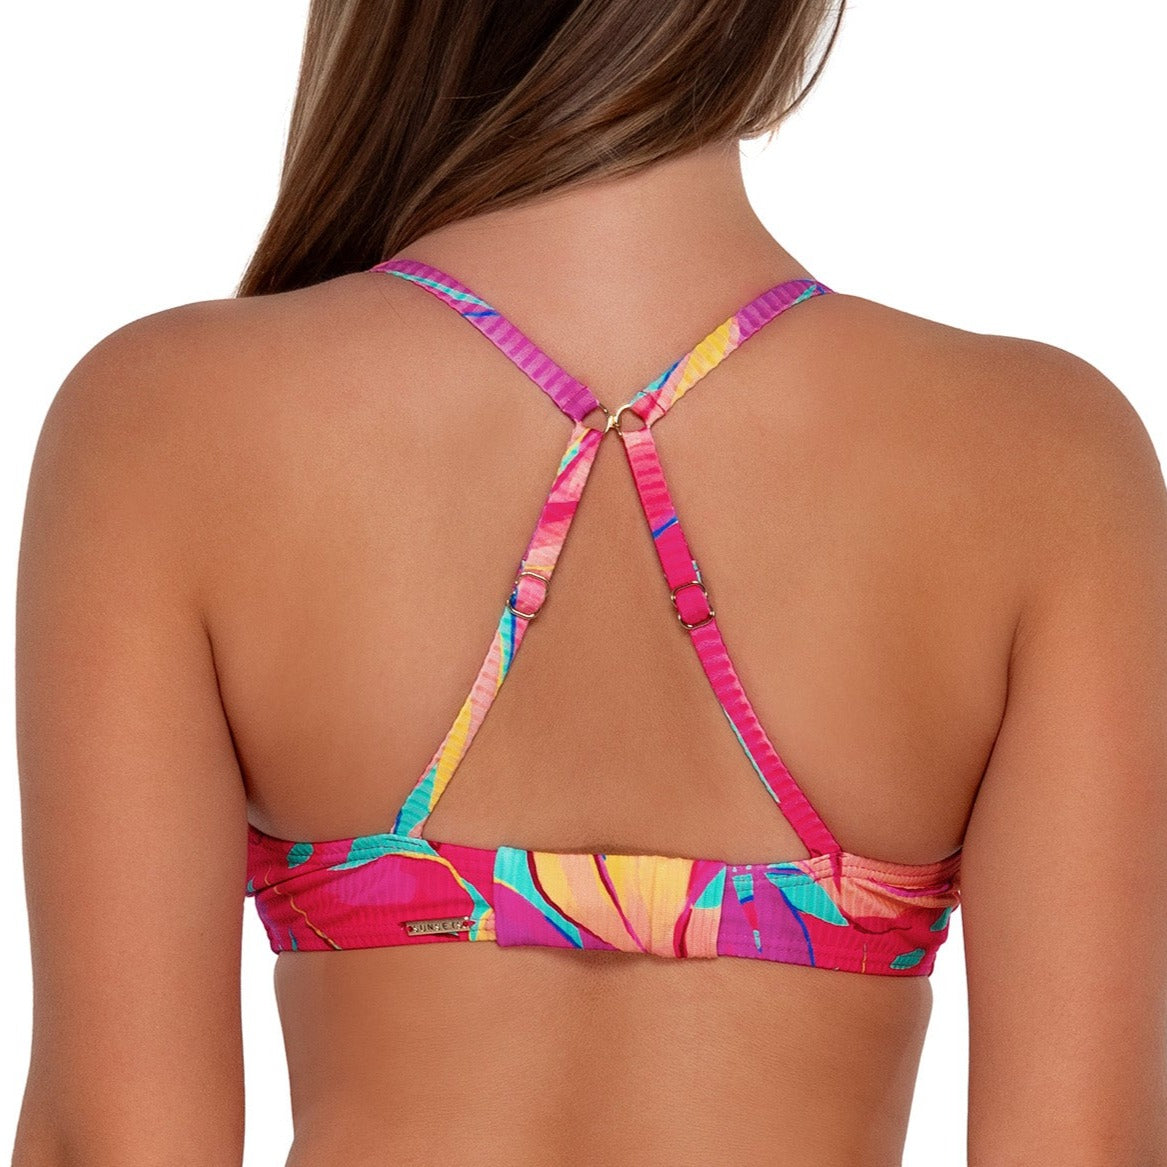 Kauai Keyhole - 54 - Oasis Sandbar Rib Swim - Tops - Bikinis Sunsets, Inc.   